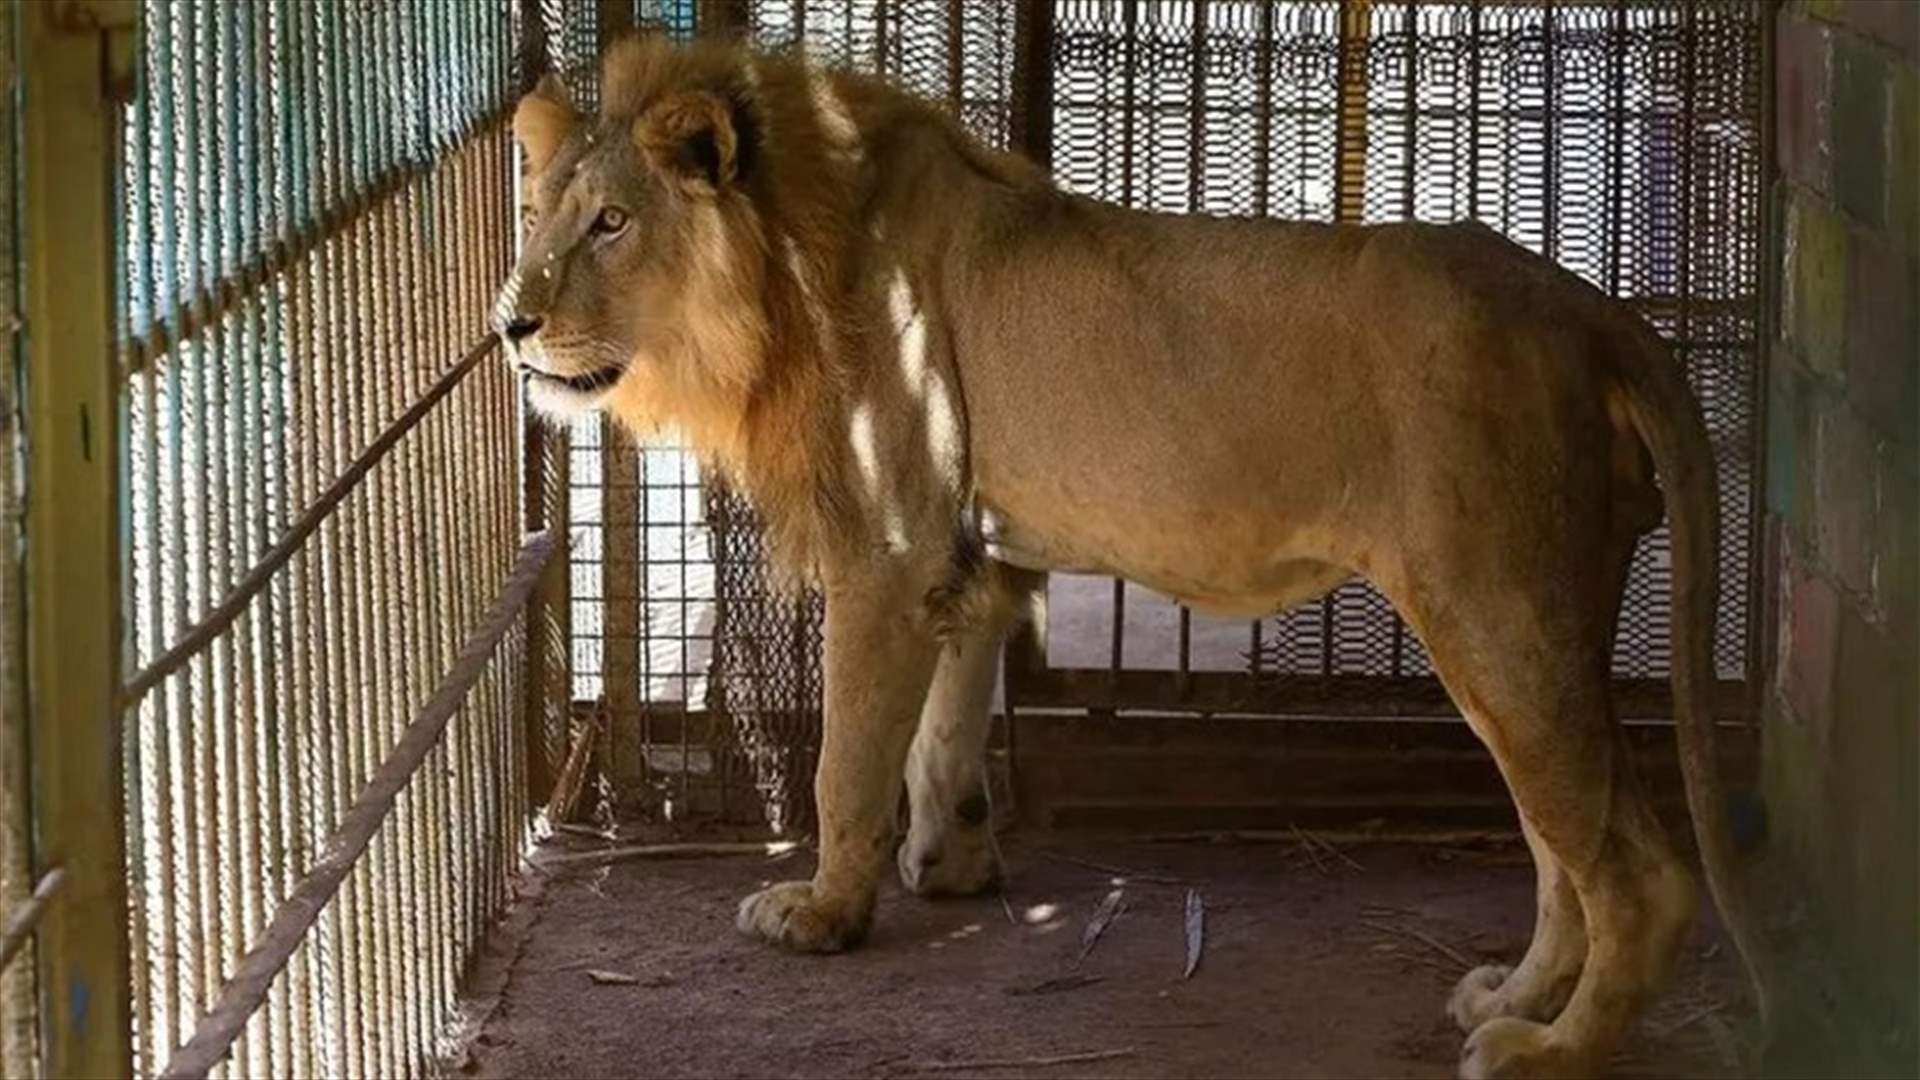 حادثة مأساوية في السودان... أسد يفترس طفلة داخل حديقة حيوان!